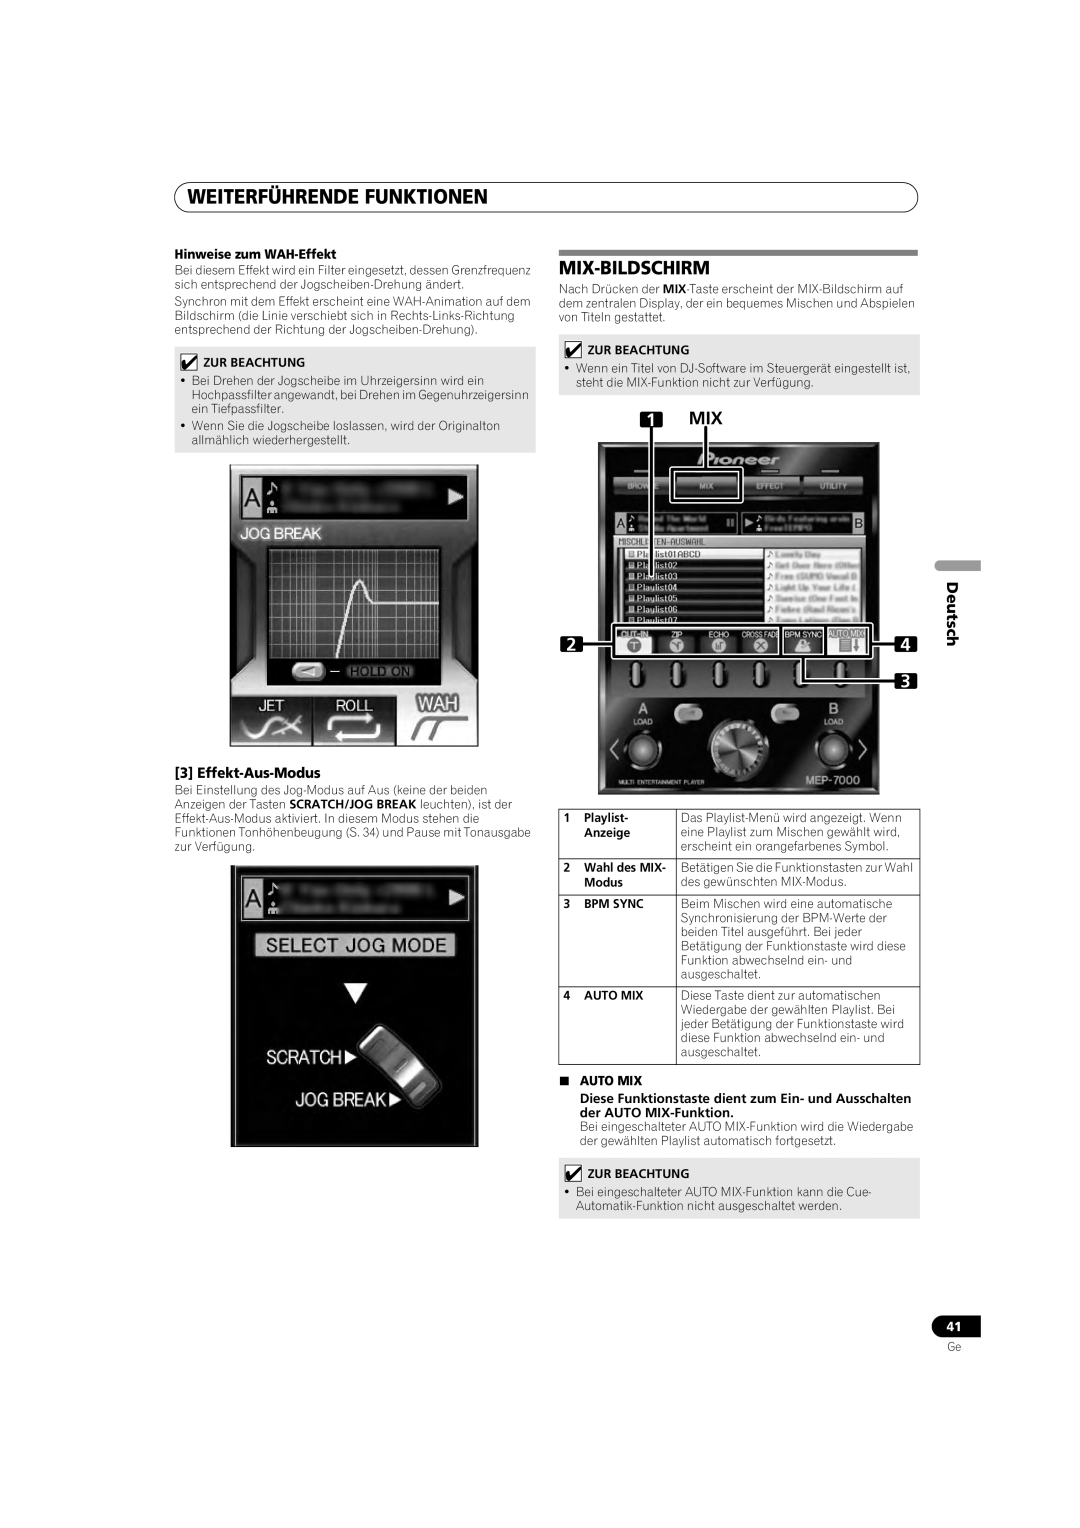 Pioneer MEP-7000 Mix-Bildschirm, Weiterführende Funktionen, Deutsch, Hinweise zum WAH-Effekt, Auto Mix 